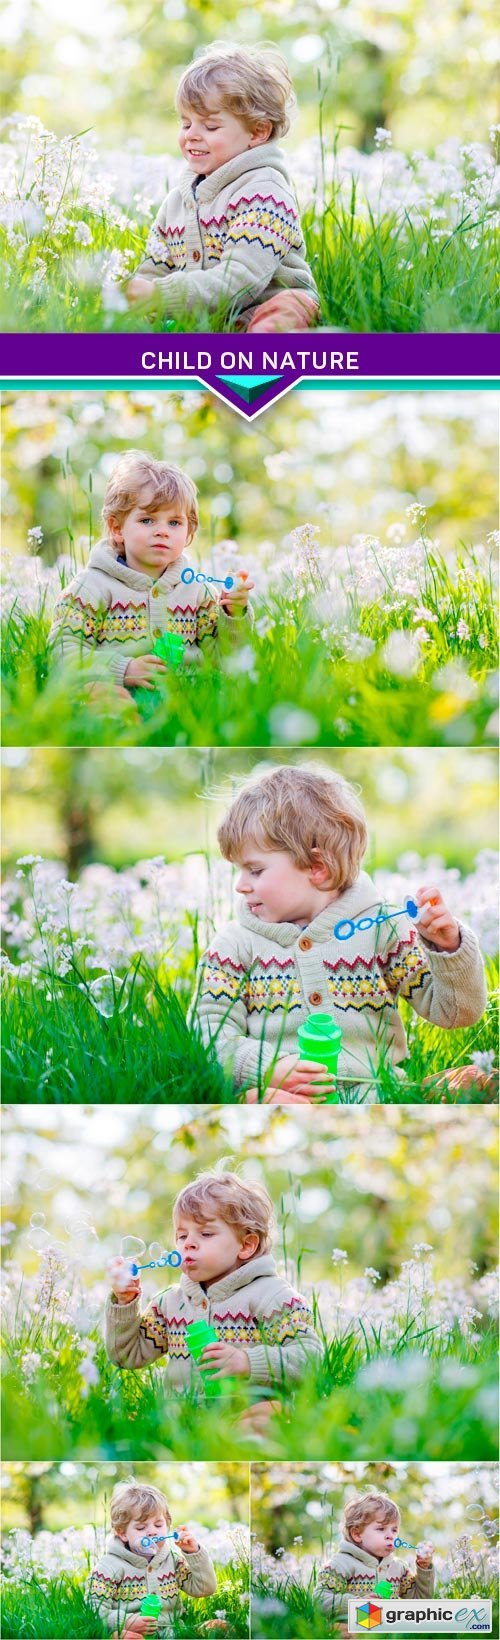 Child on nature 6x JPEG